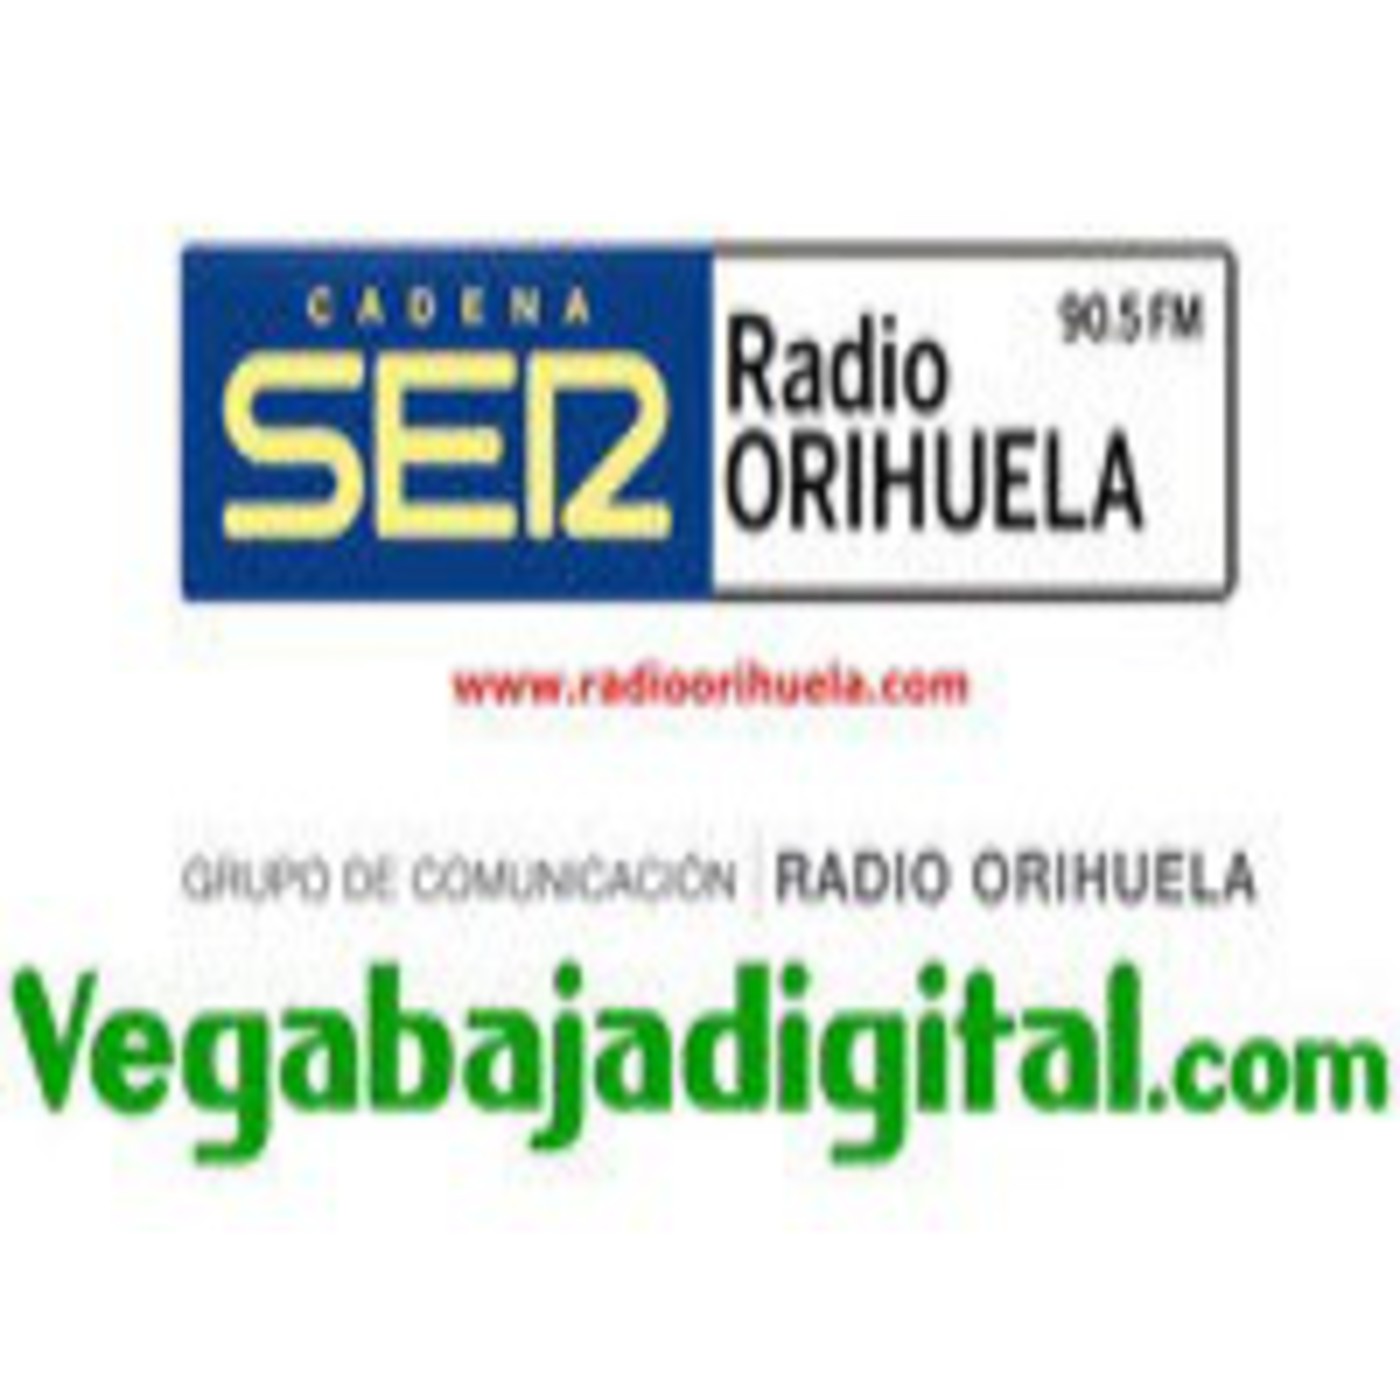 Podcast Vega Baja Digital